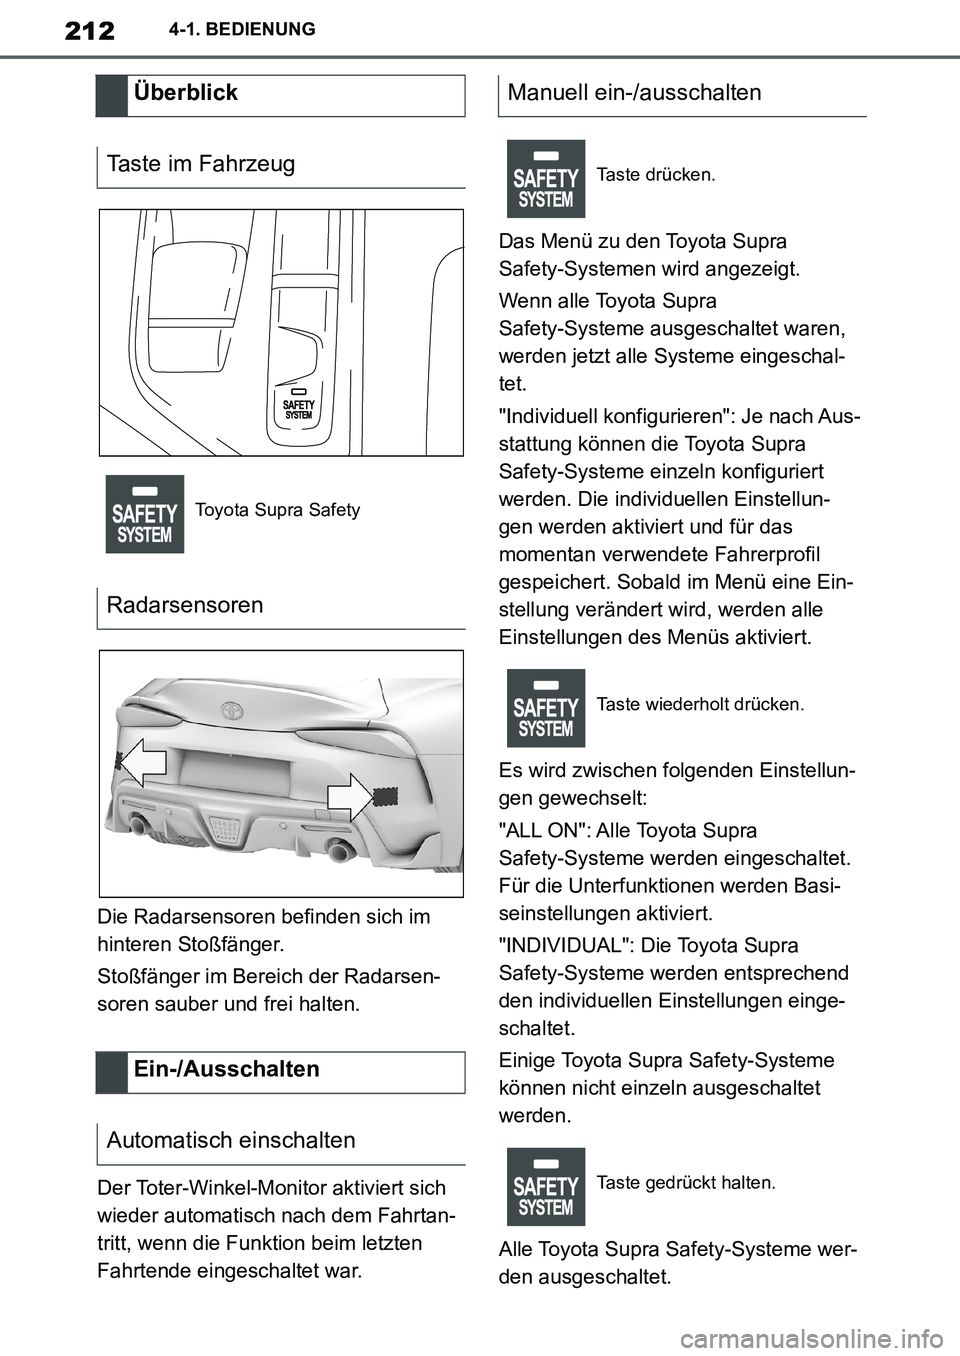 TOYOTA SUPRA 2020  Betriebsanleitungen (in German) 212
Supra Owners Manual_EM
4-1. BEDIENUNG
Die Radarsensoren befinden sich im 
hinteren Stoßfänger.
Stoßfänger im Bereich der Radarsen-
soren sauber und frei halten.
Der Toter-Winkel-Monitor aktiv